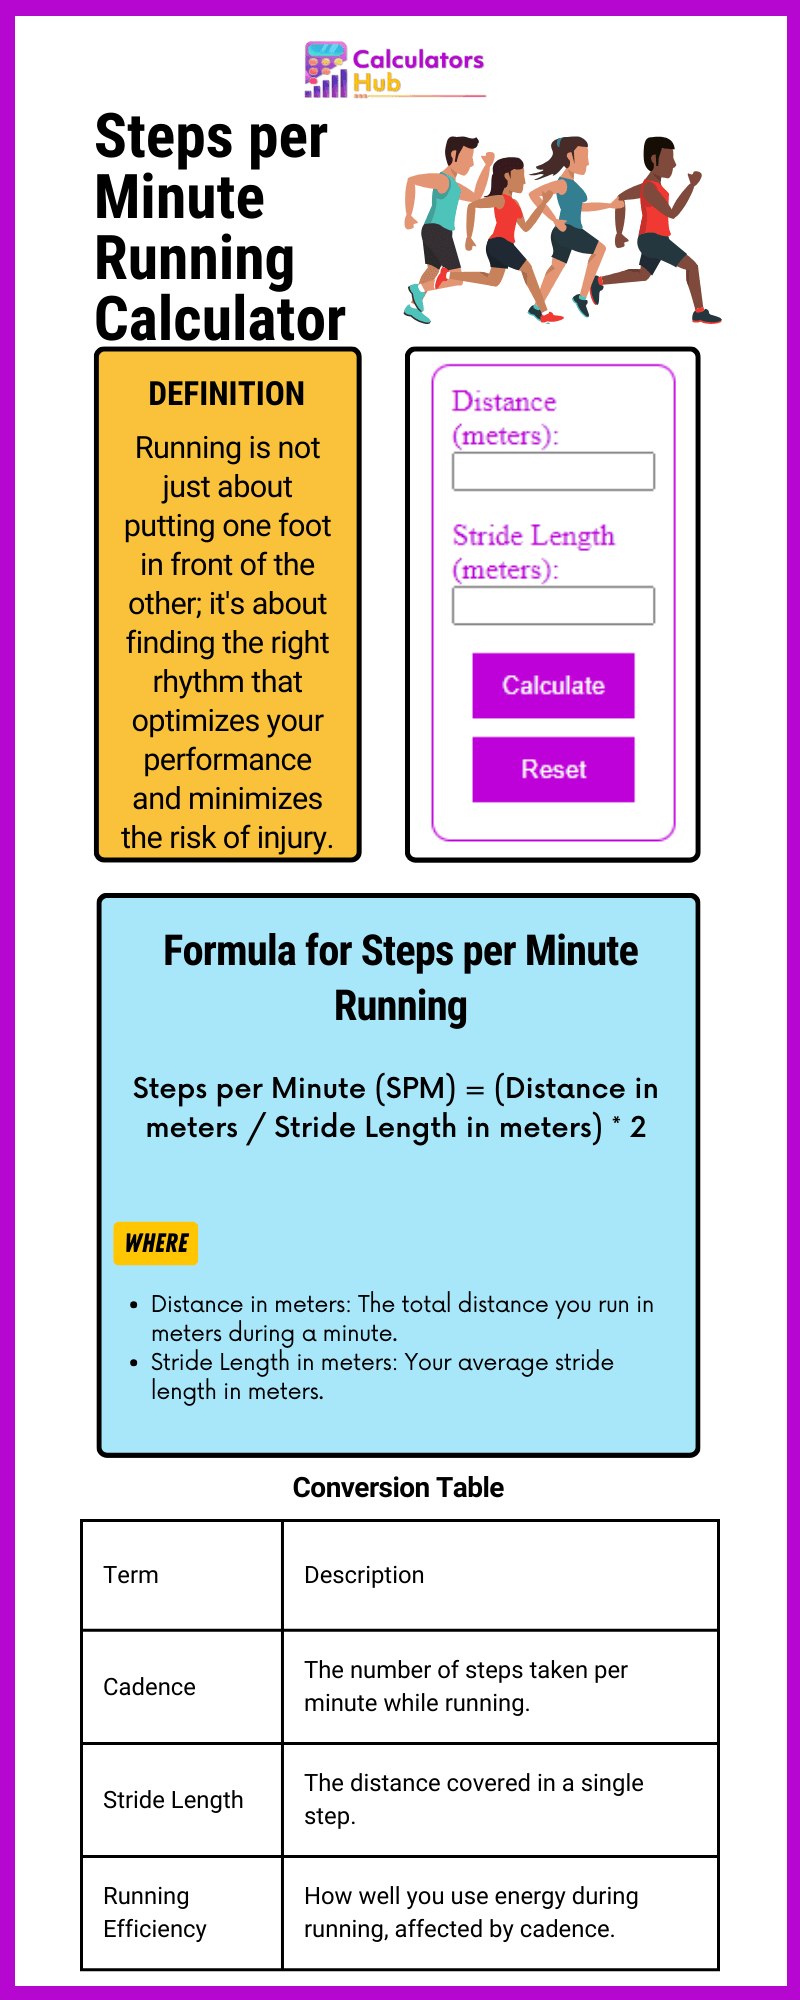 Steps per Minute Running Calculator